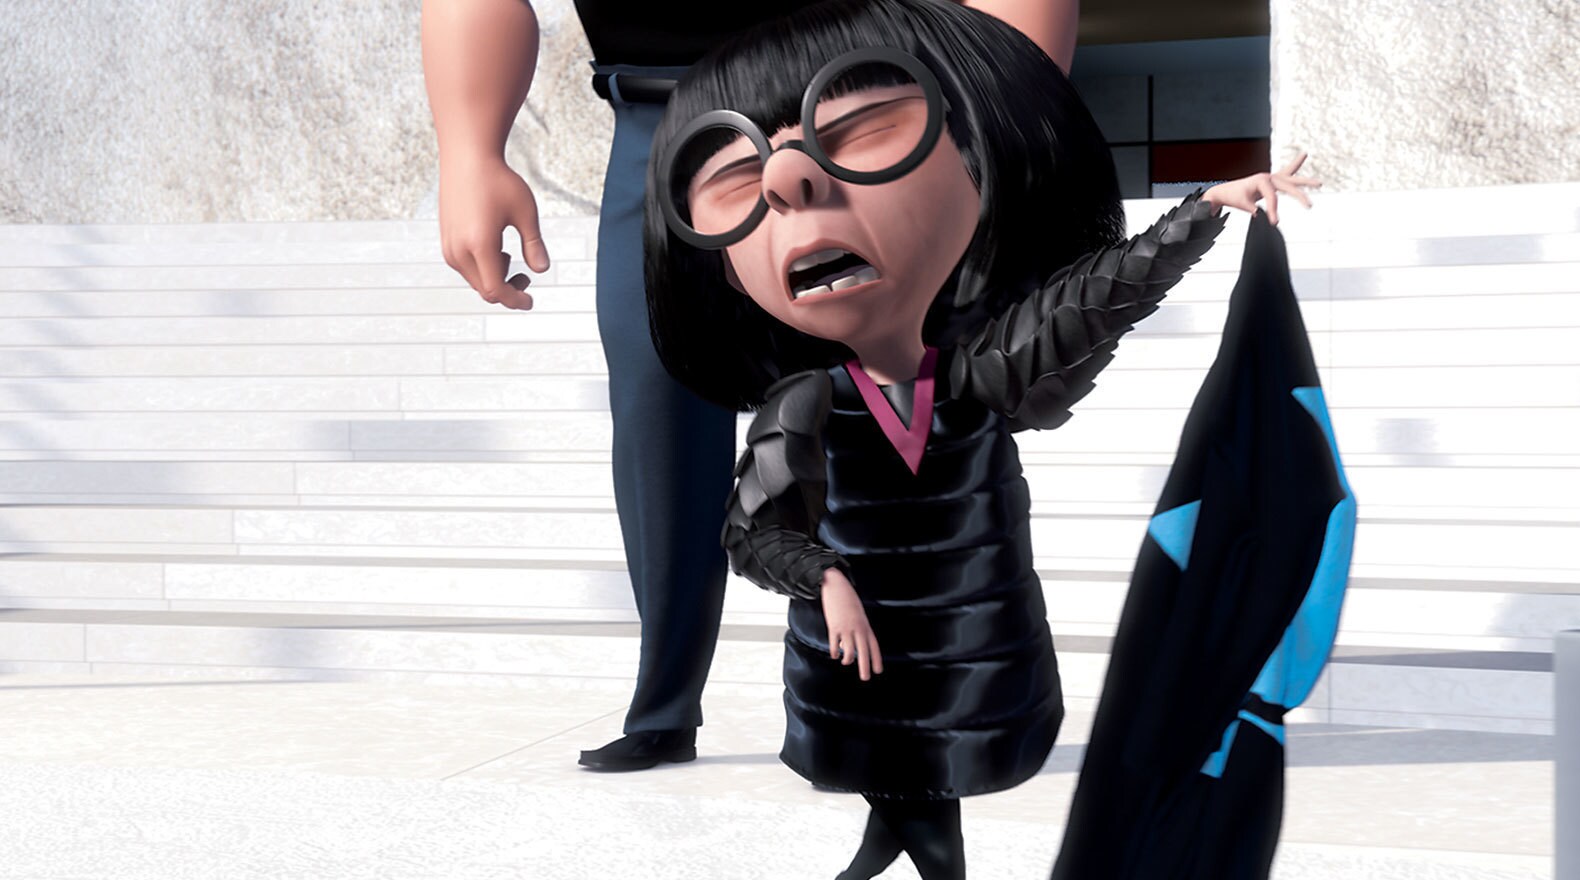 Edna E Mode in "The Incredibles"